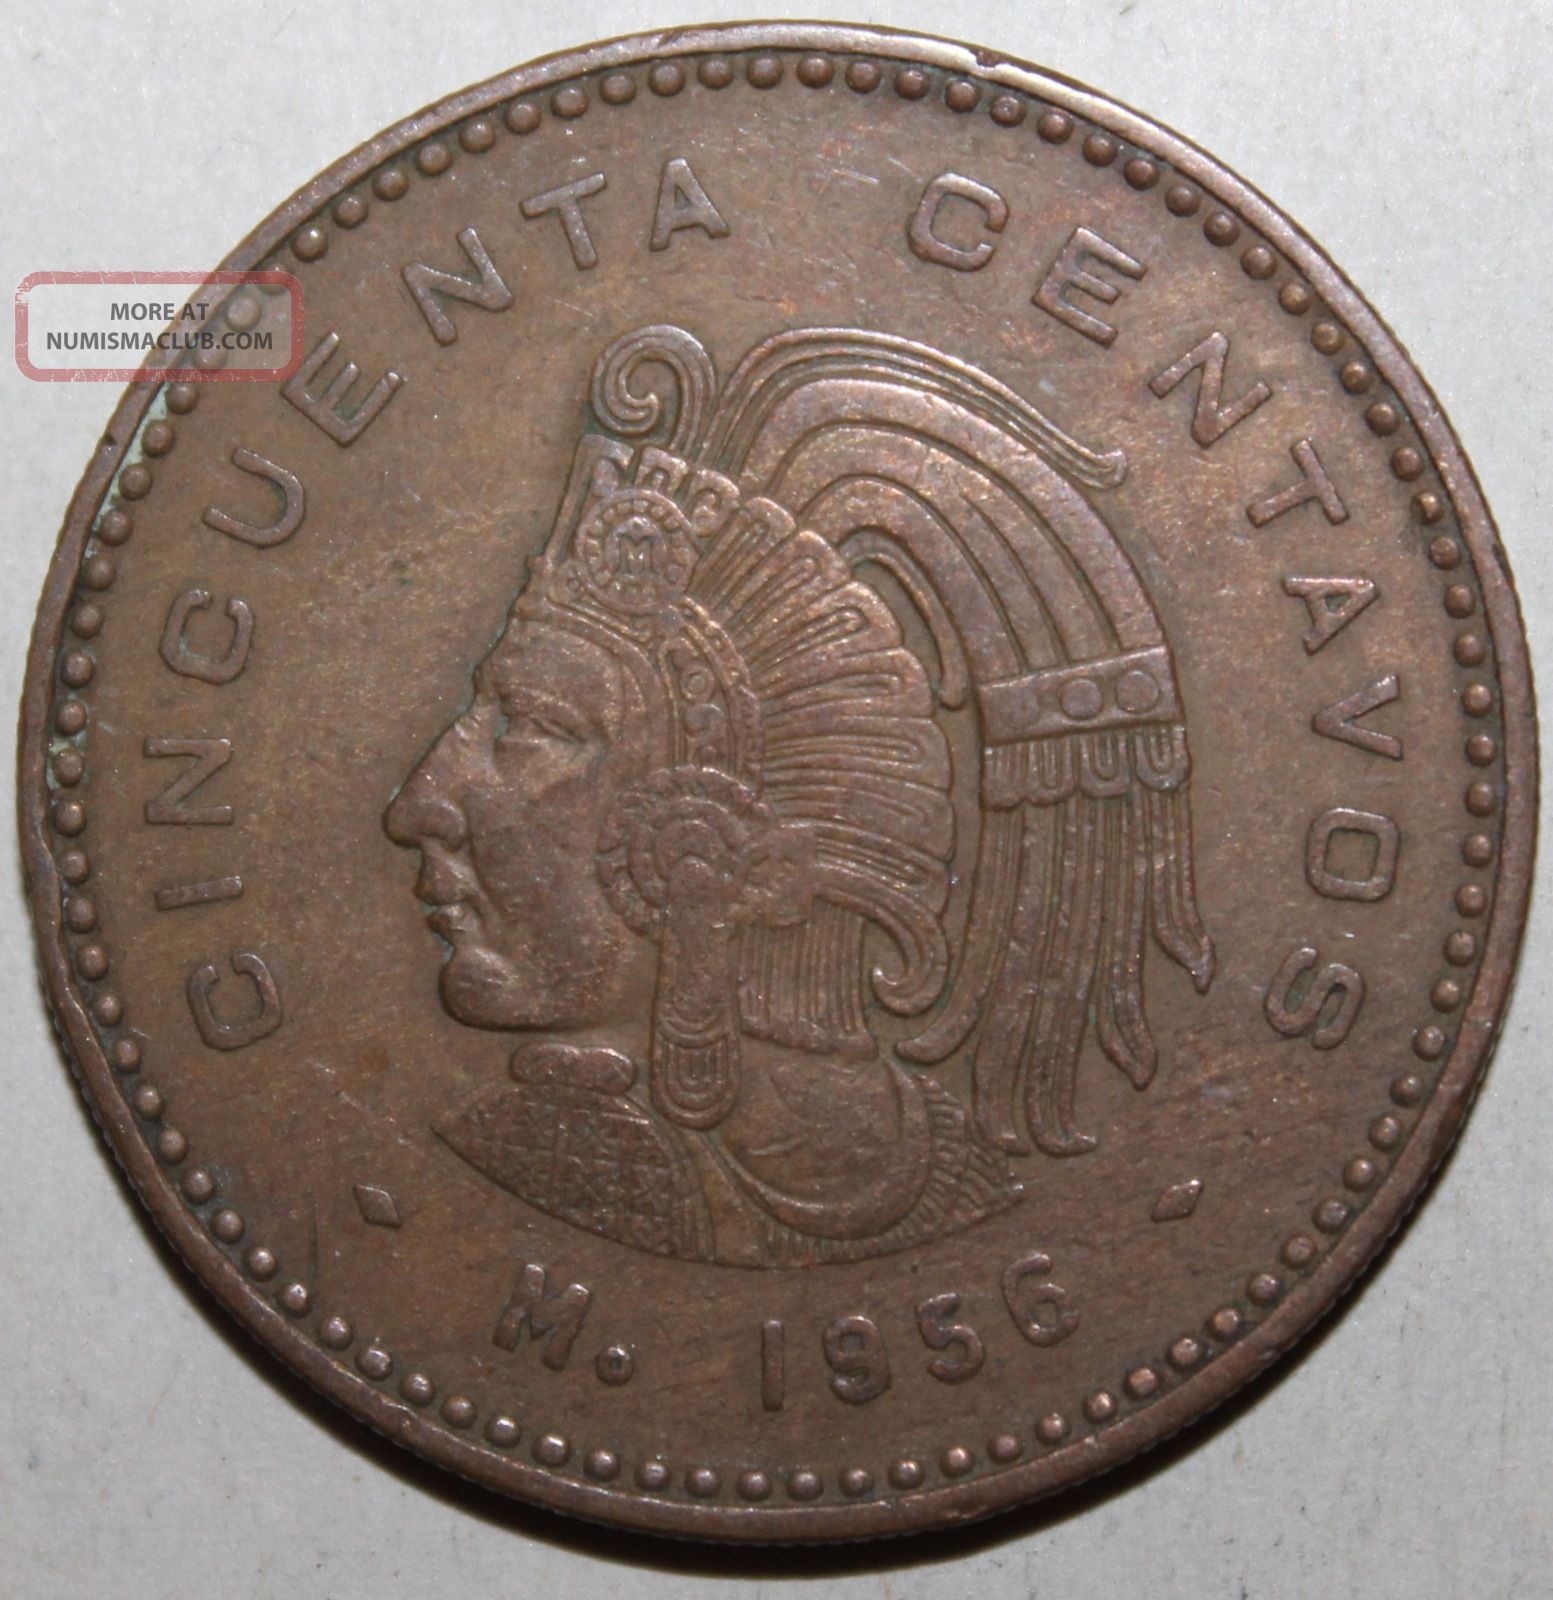 Mexican 50 Centavos Coin, 1956 - Km 450 - Mexico - Cuauhtémoc - Fifty ...